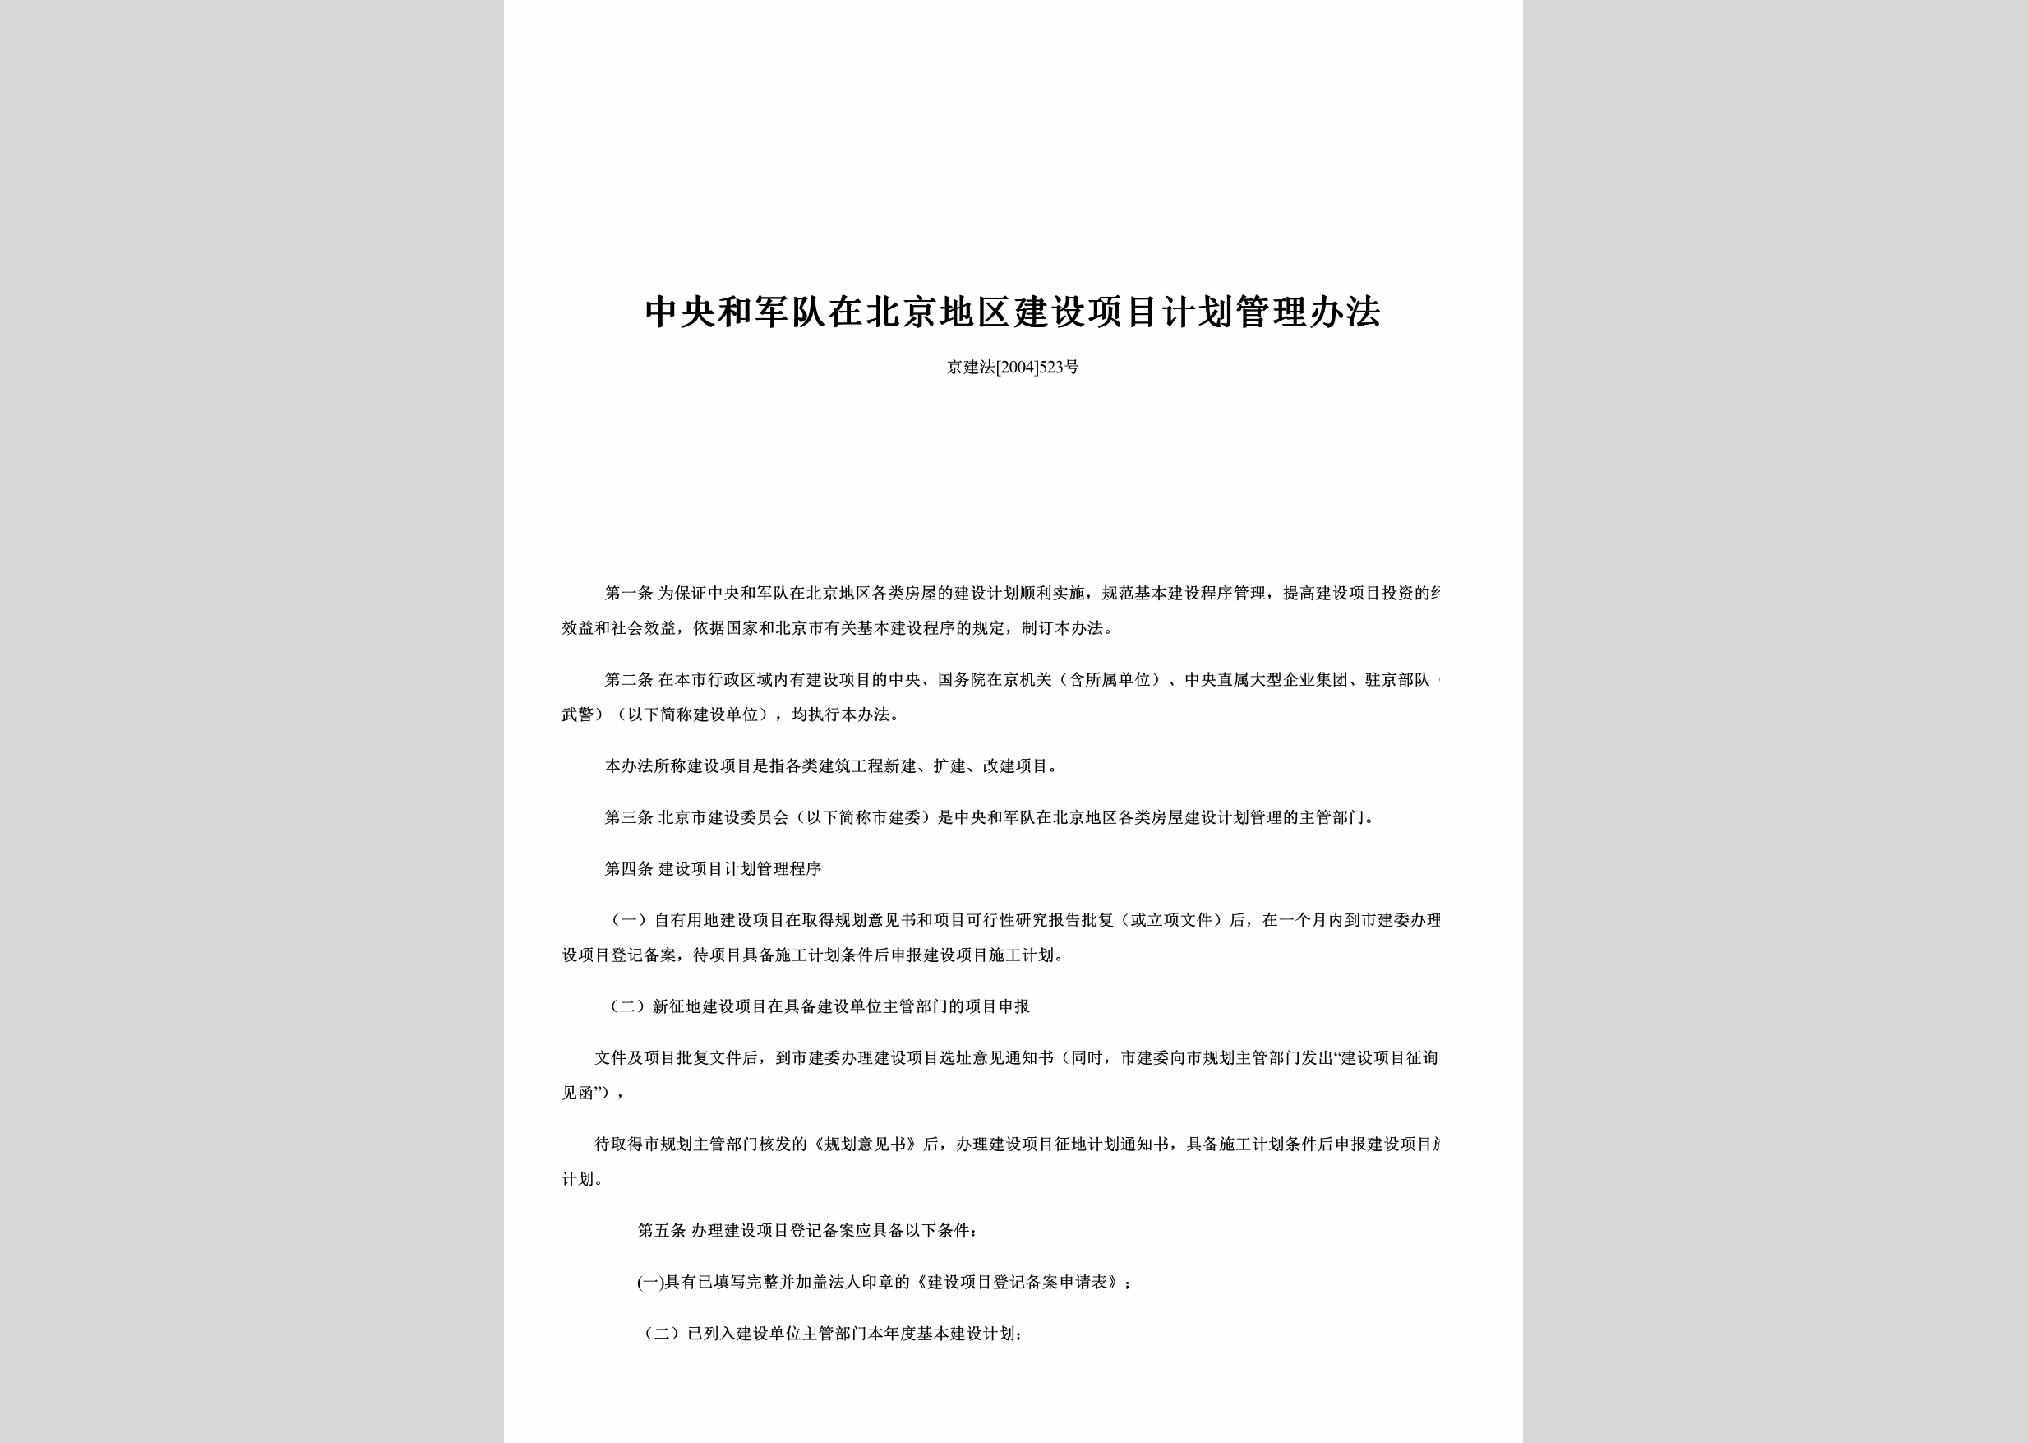 京建法[2004]523号：中央和军队在北京地区建设项目计划管理办法